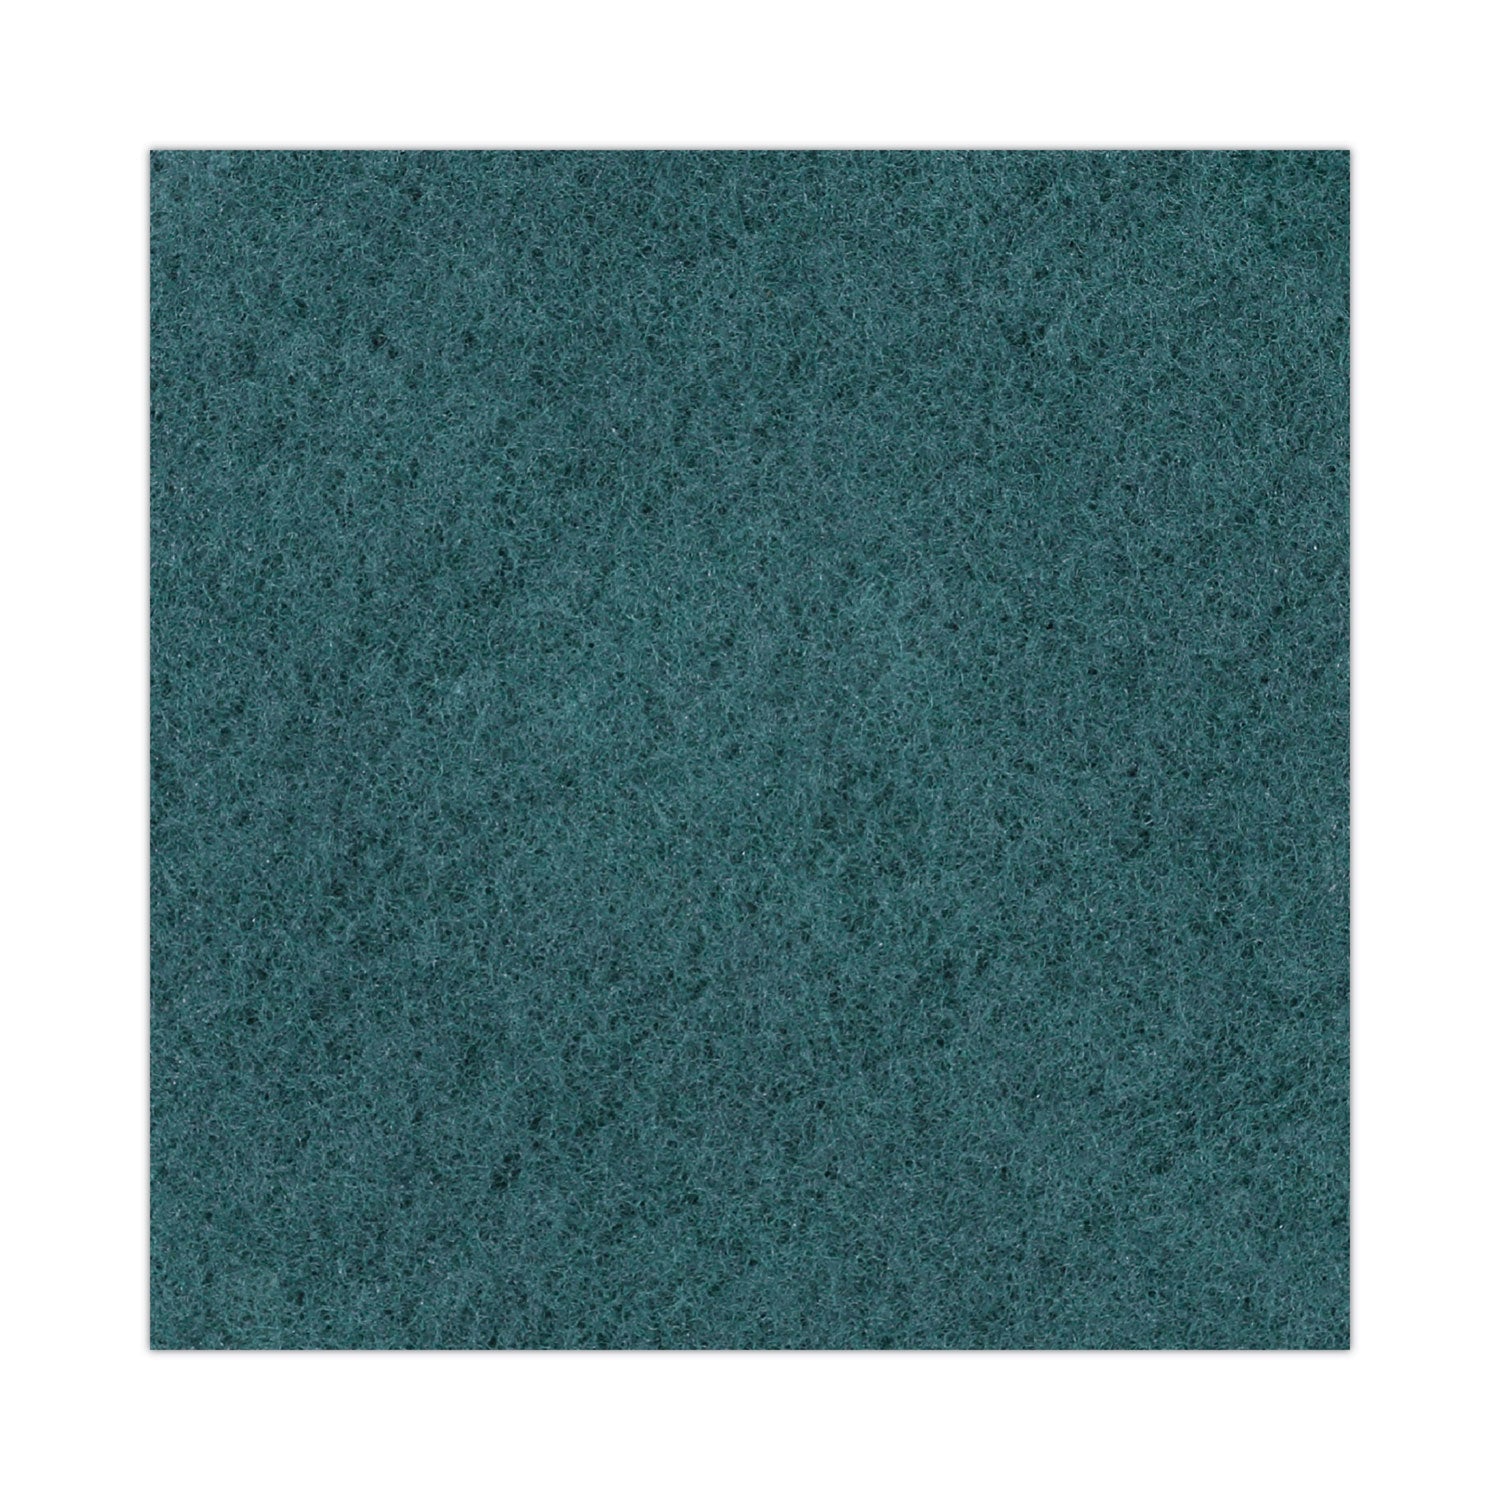 heavy-duty-scrubbing-floor-pads-19-diameter-green-5-carton_bwk4019gre - 6